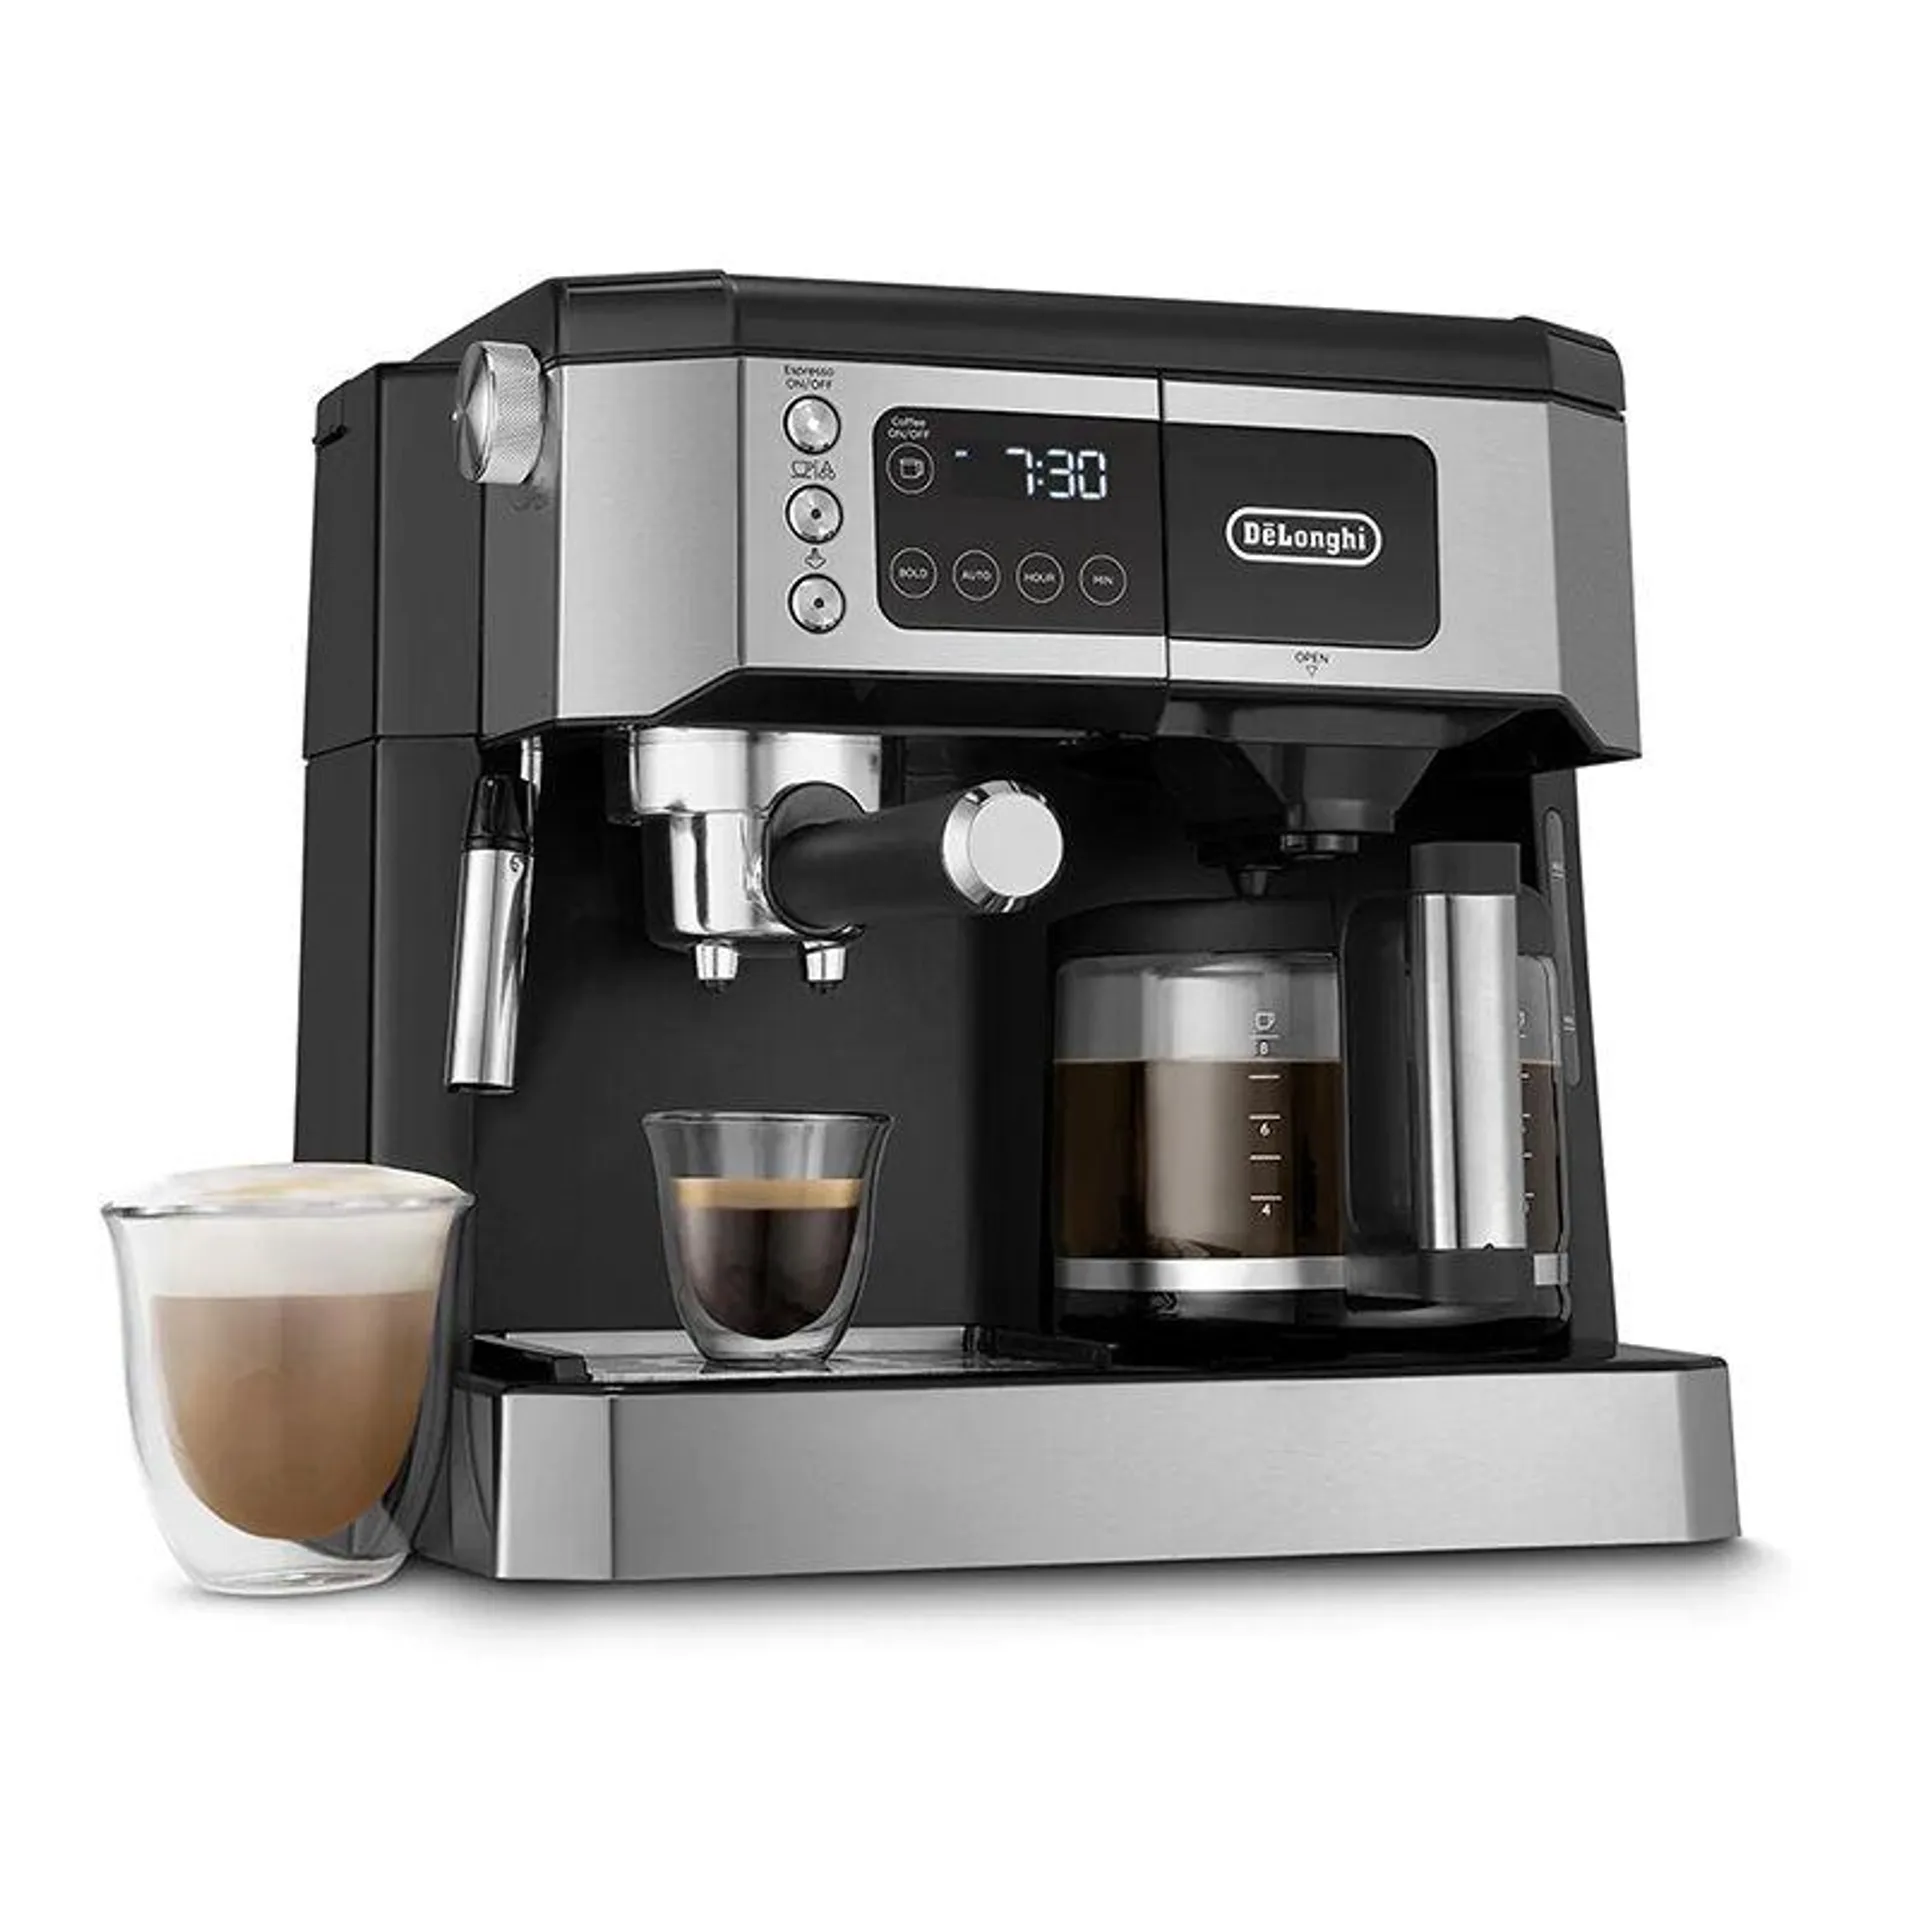 De Longhi All-in-One Coffee & Espresso Maker, Cappuccino, Latte Machine + Advanced Milk Frother